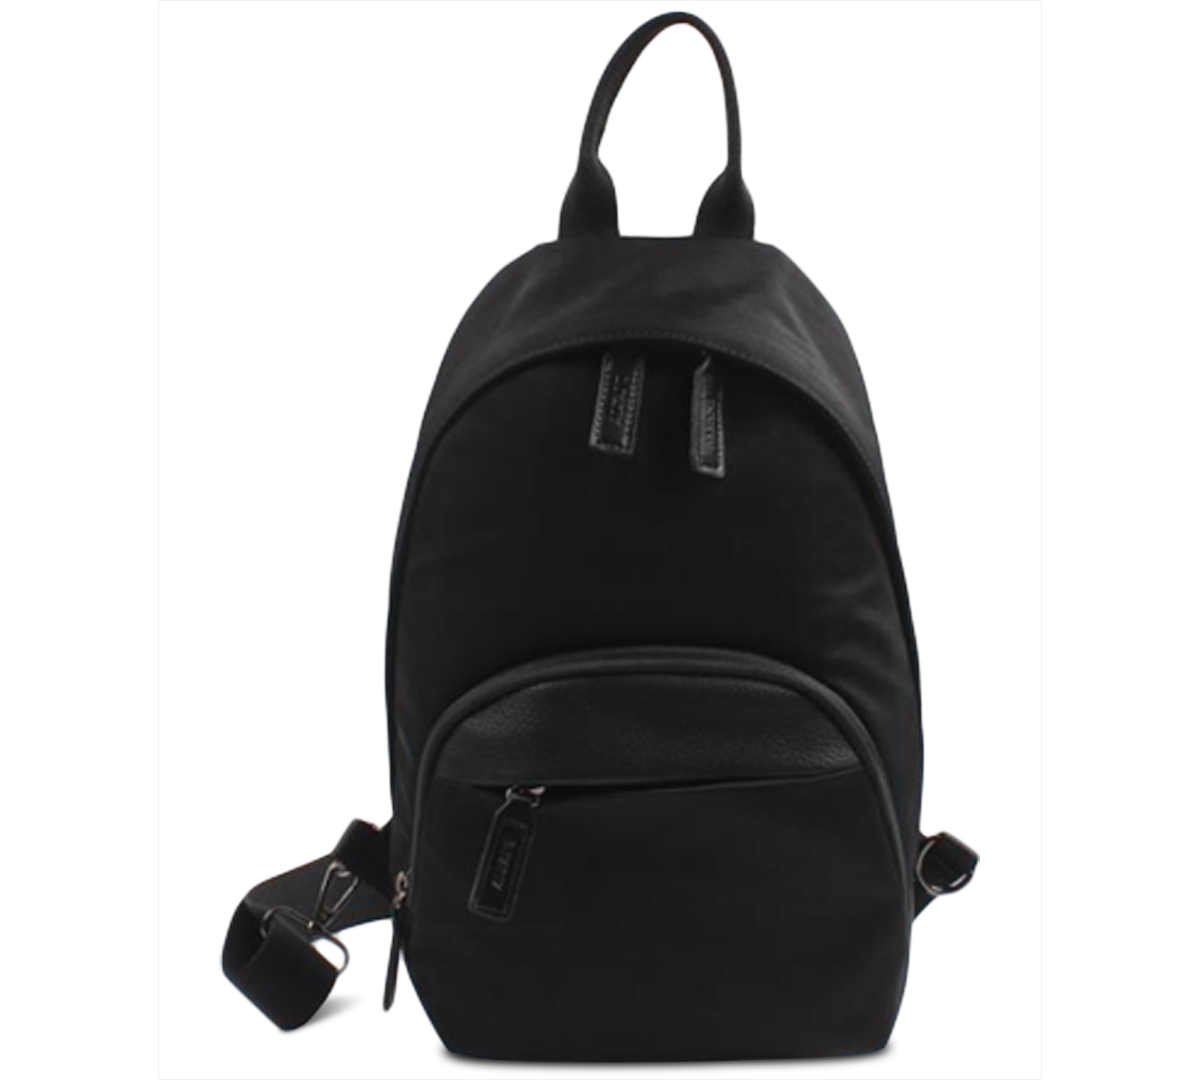 Men's Sling Backpack, Created for Macy's - Black